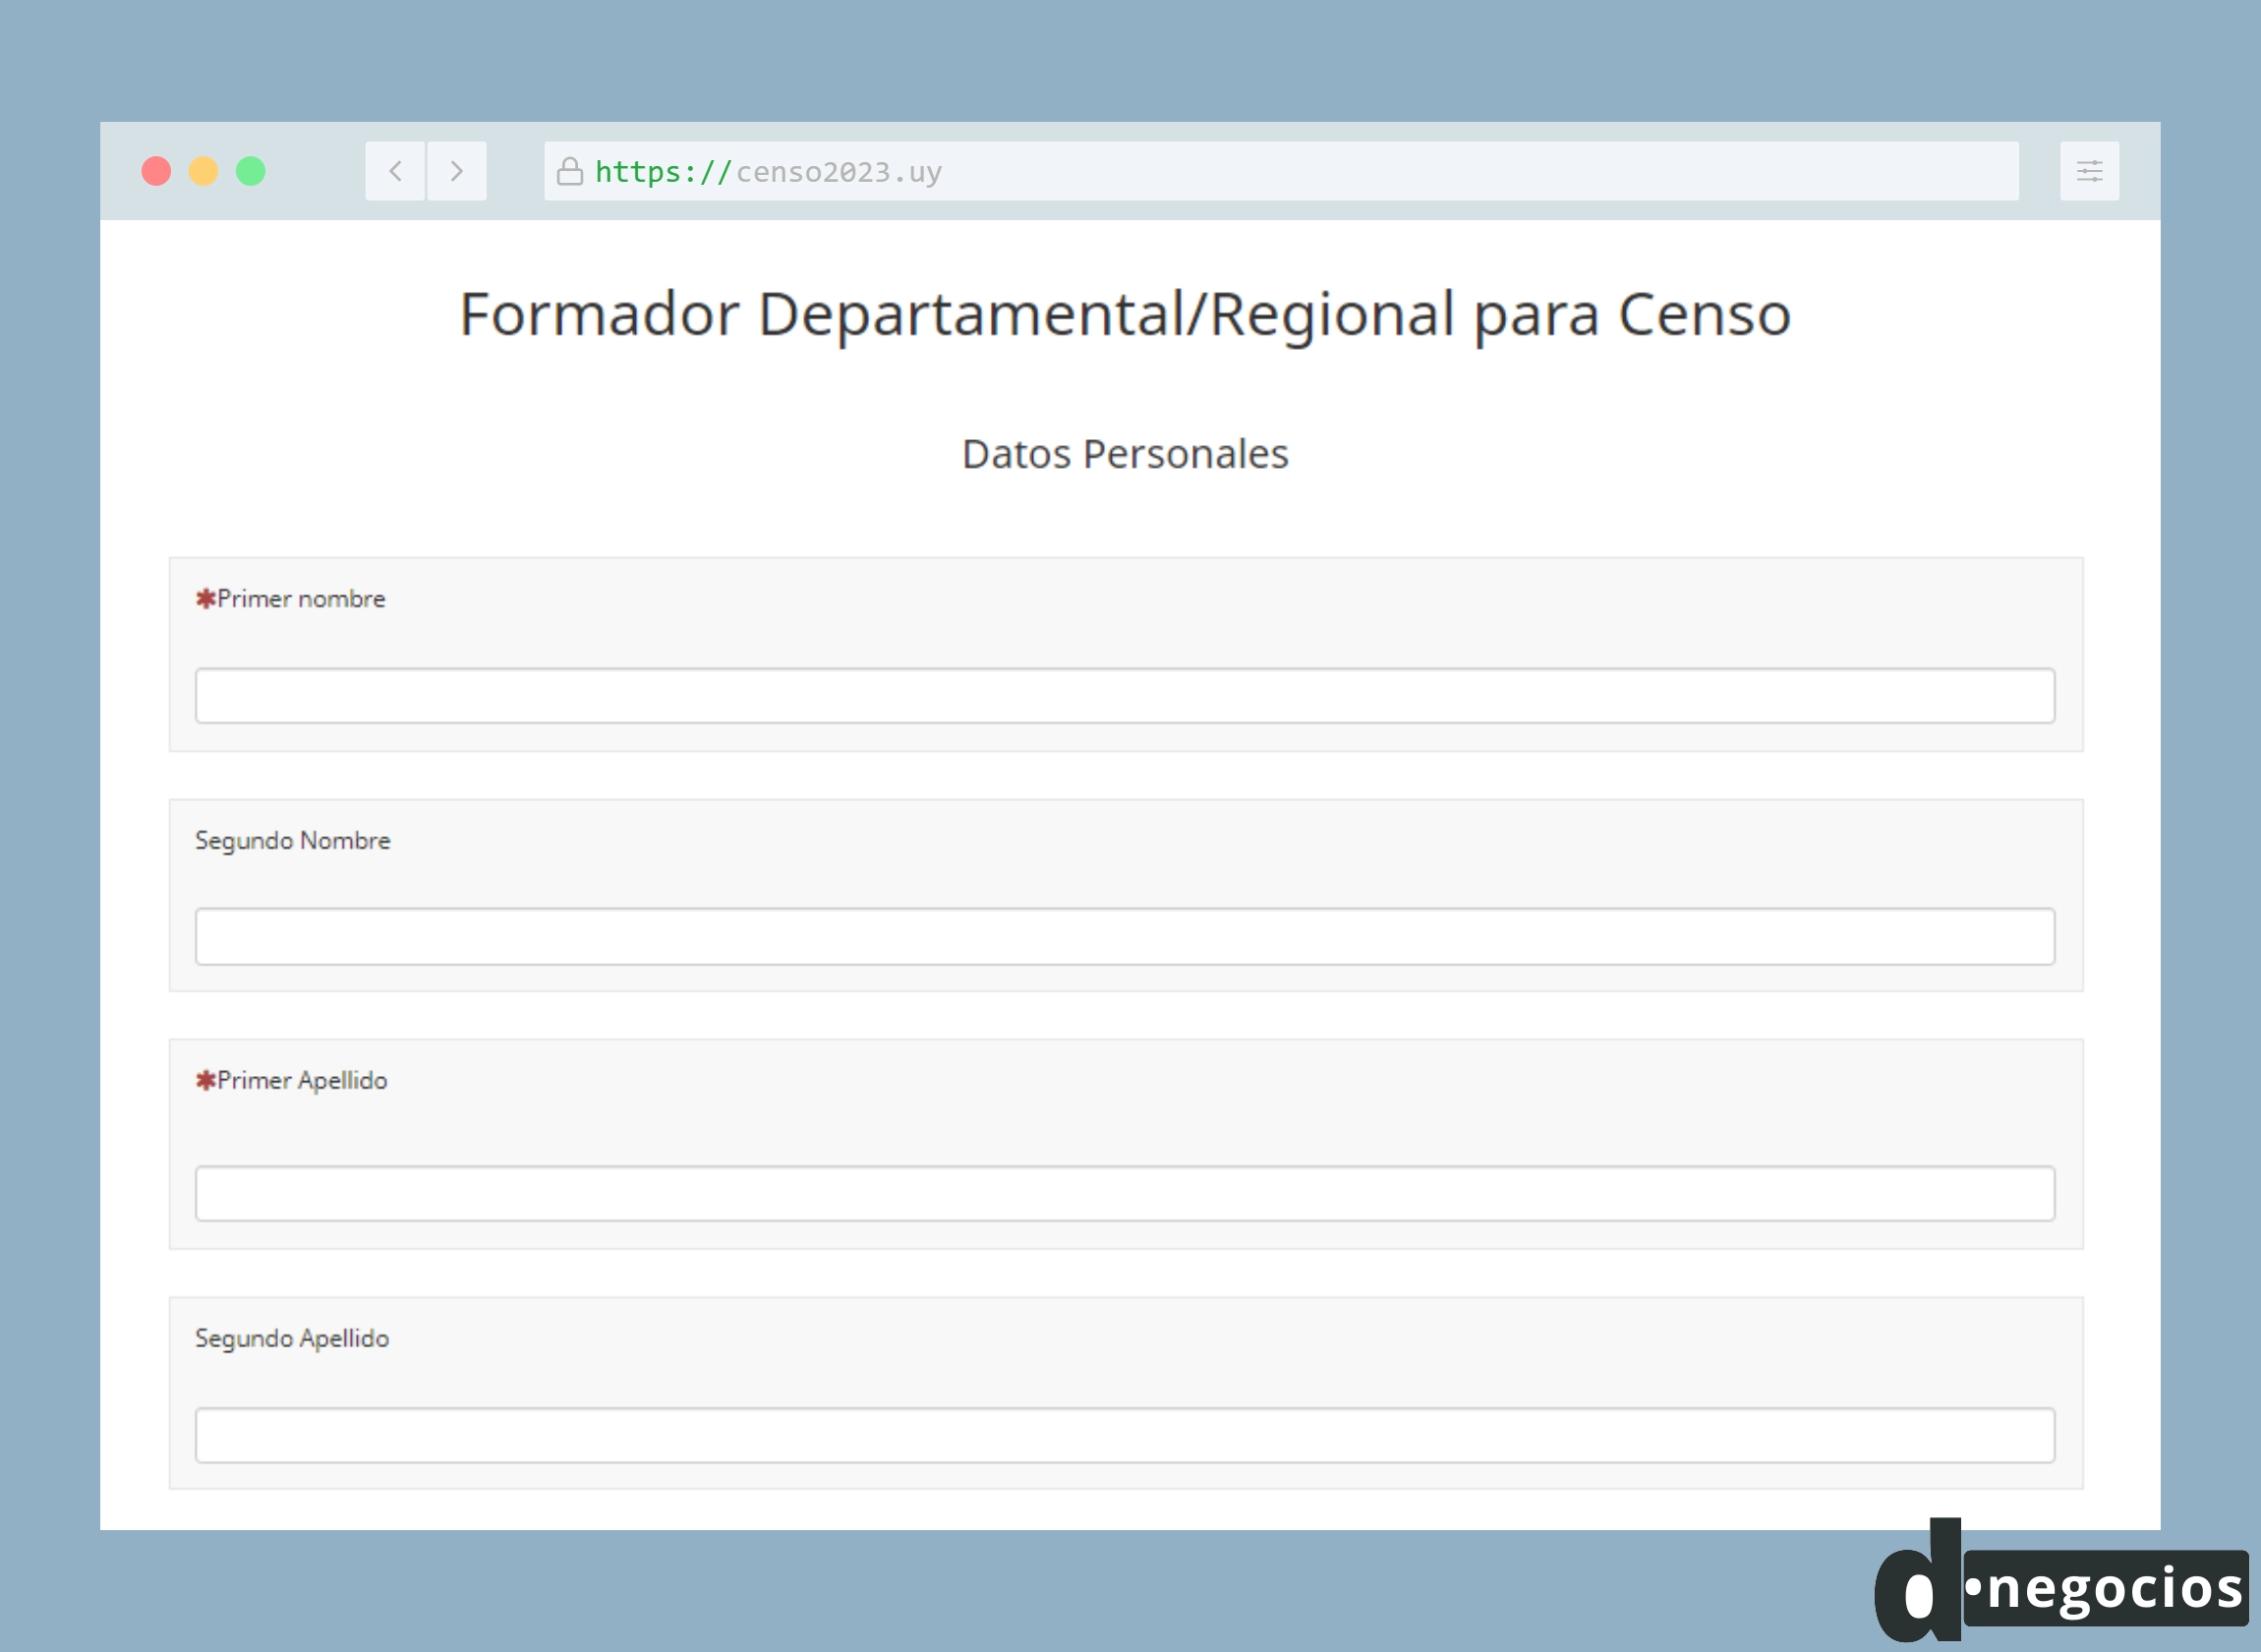 Formulario para postularse al cargo de Formador Departamental/Regional para Censo.